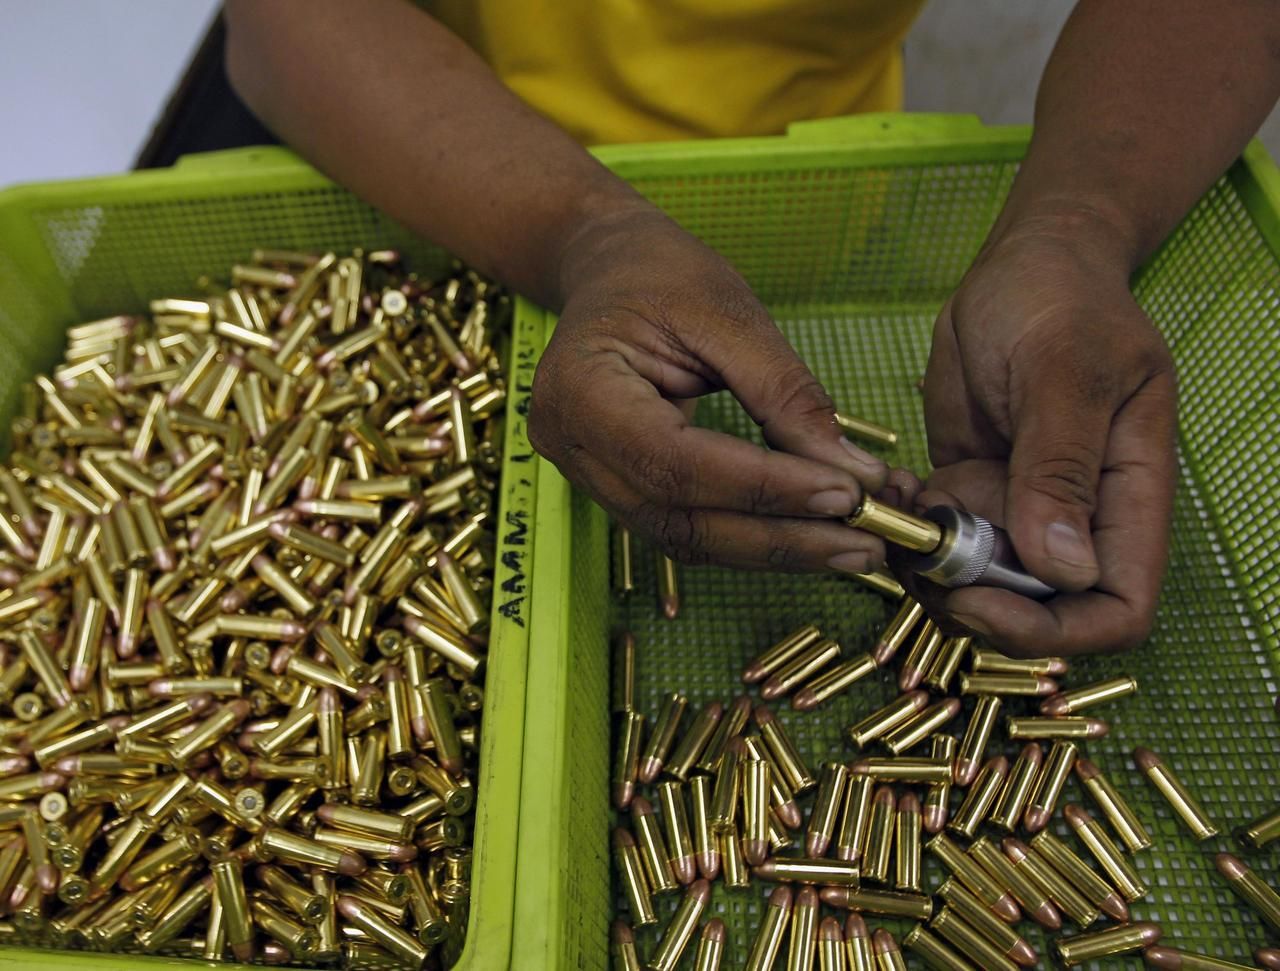 Foto: Ilegální výroba zbraní na Filipínách